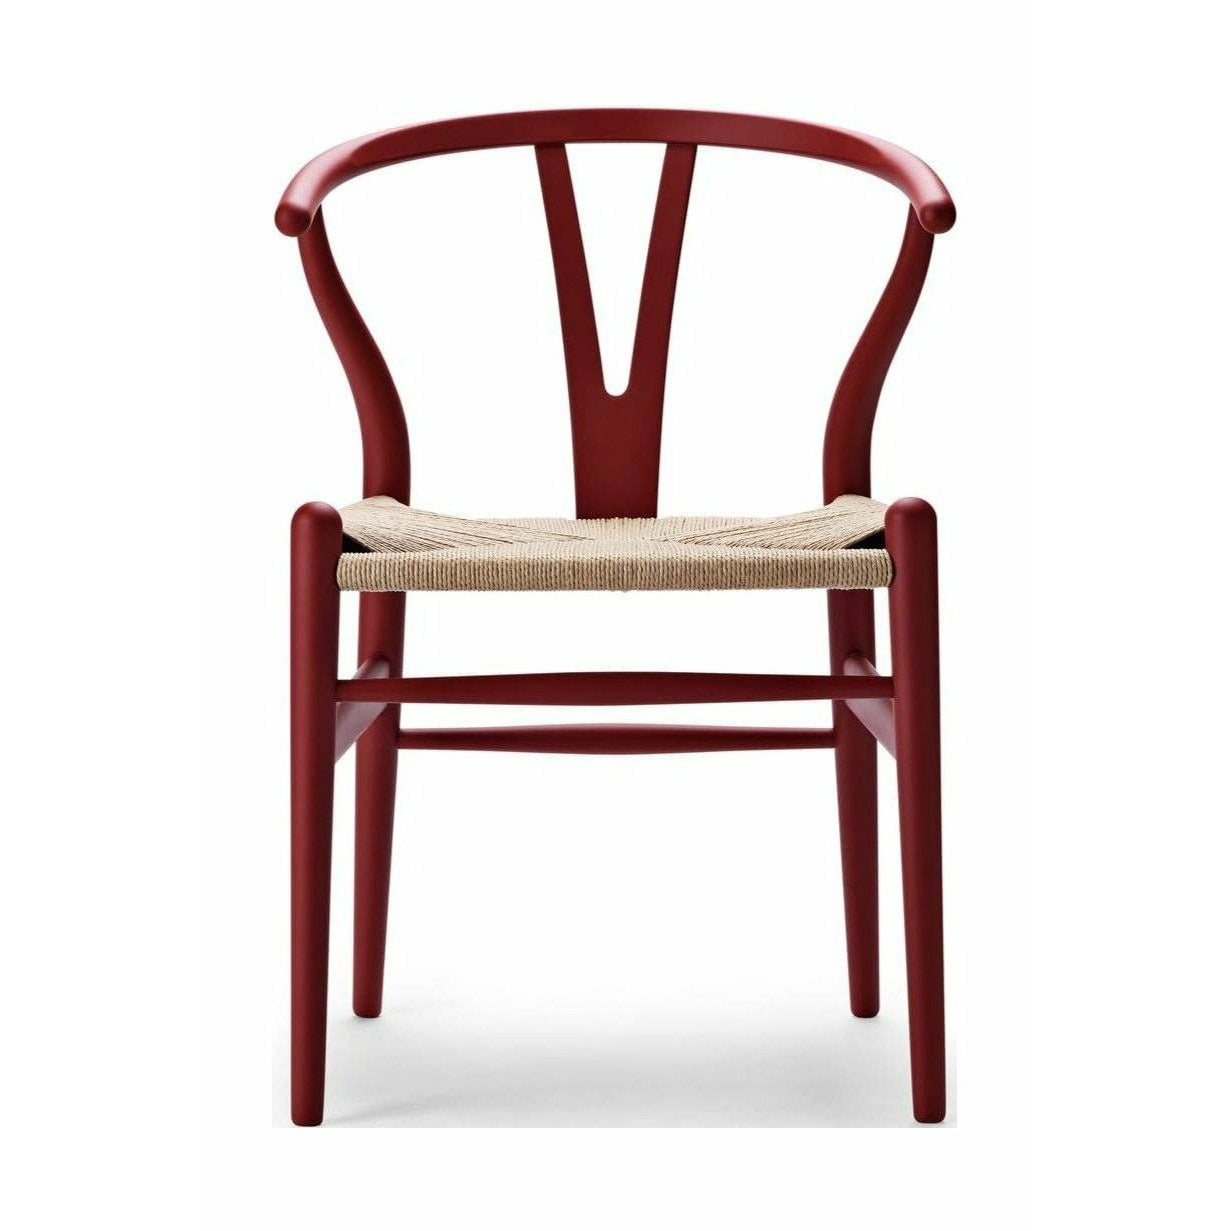 Carl Hansen CH24 Wishbone krzesło specjalne, edycja specjalna Beech, Soft Red